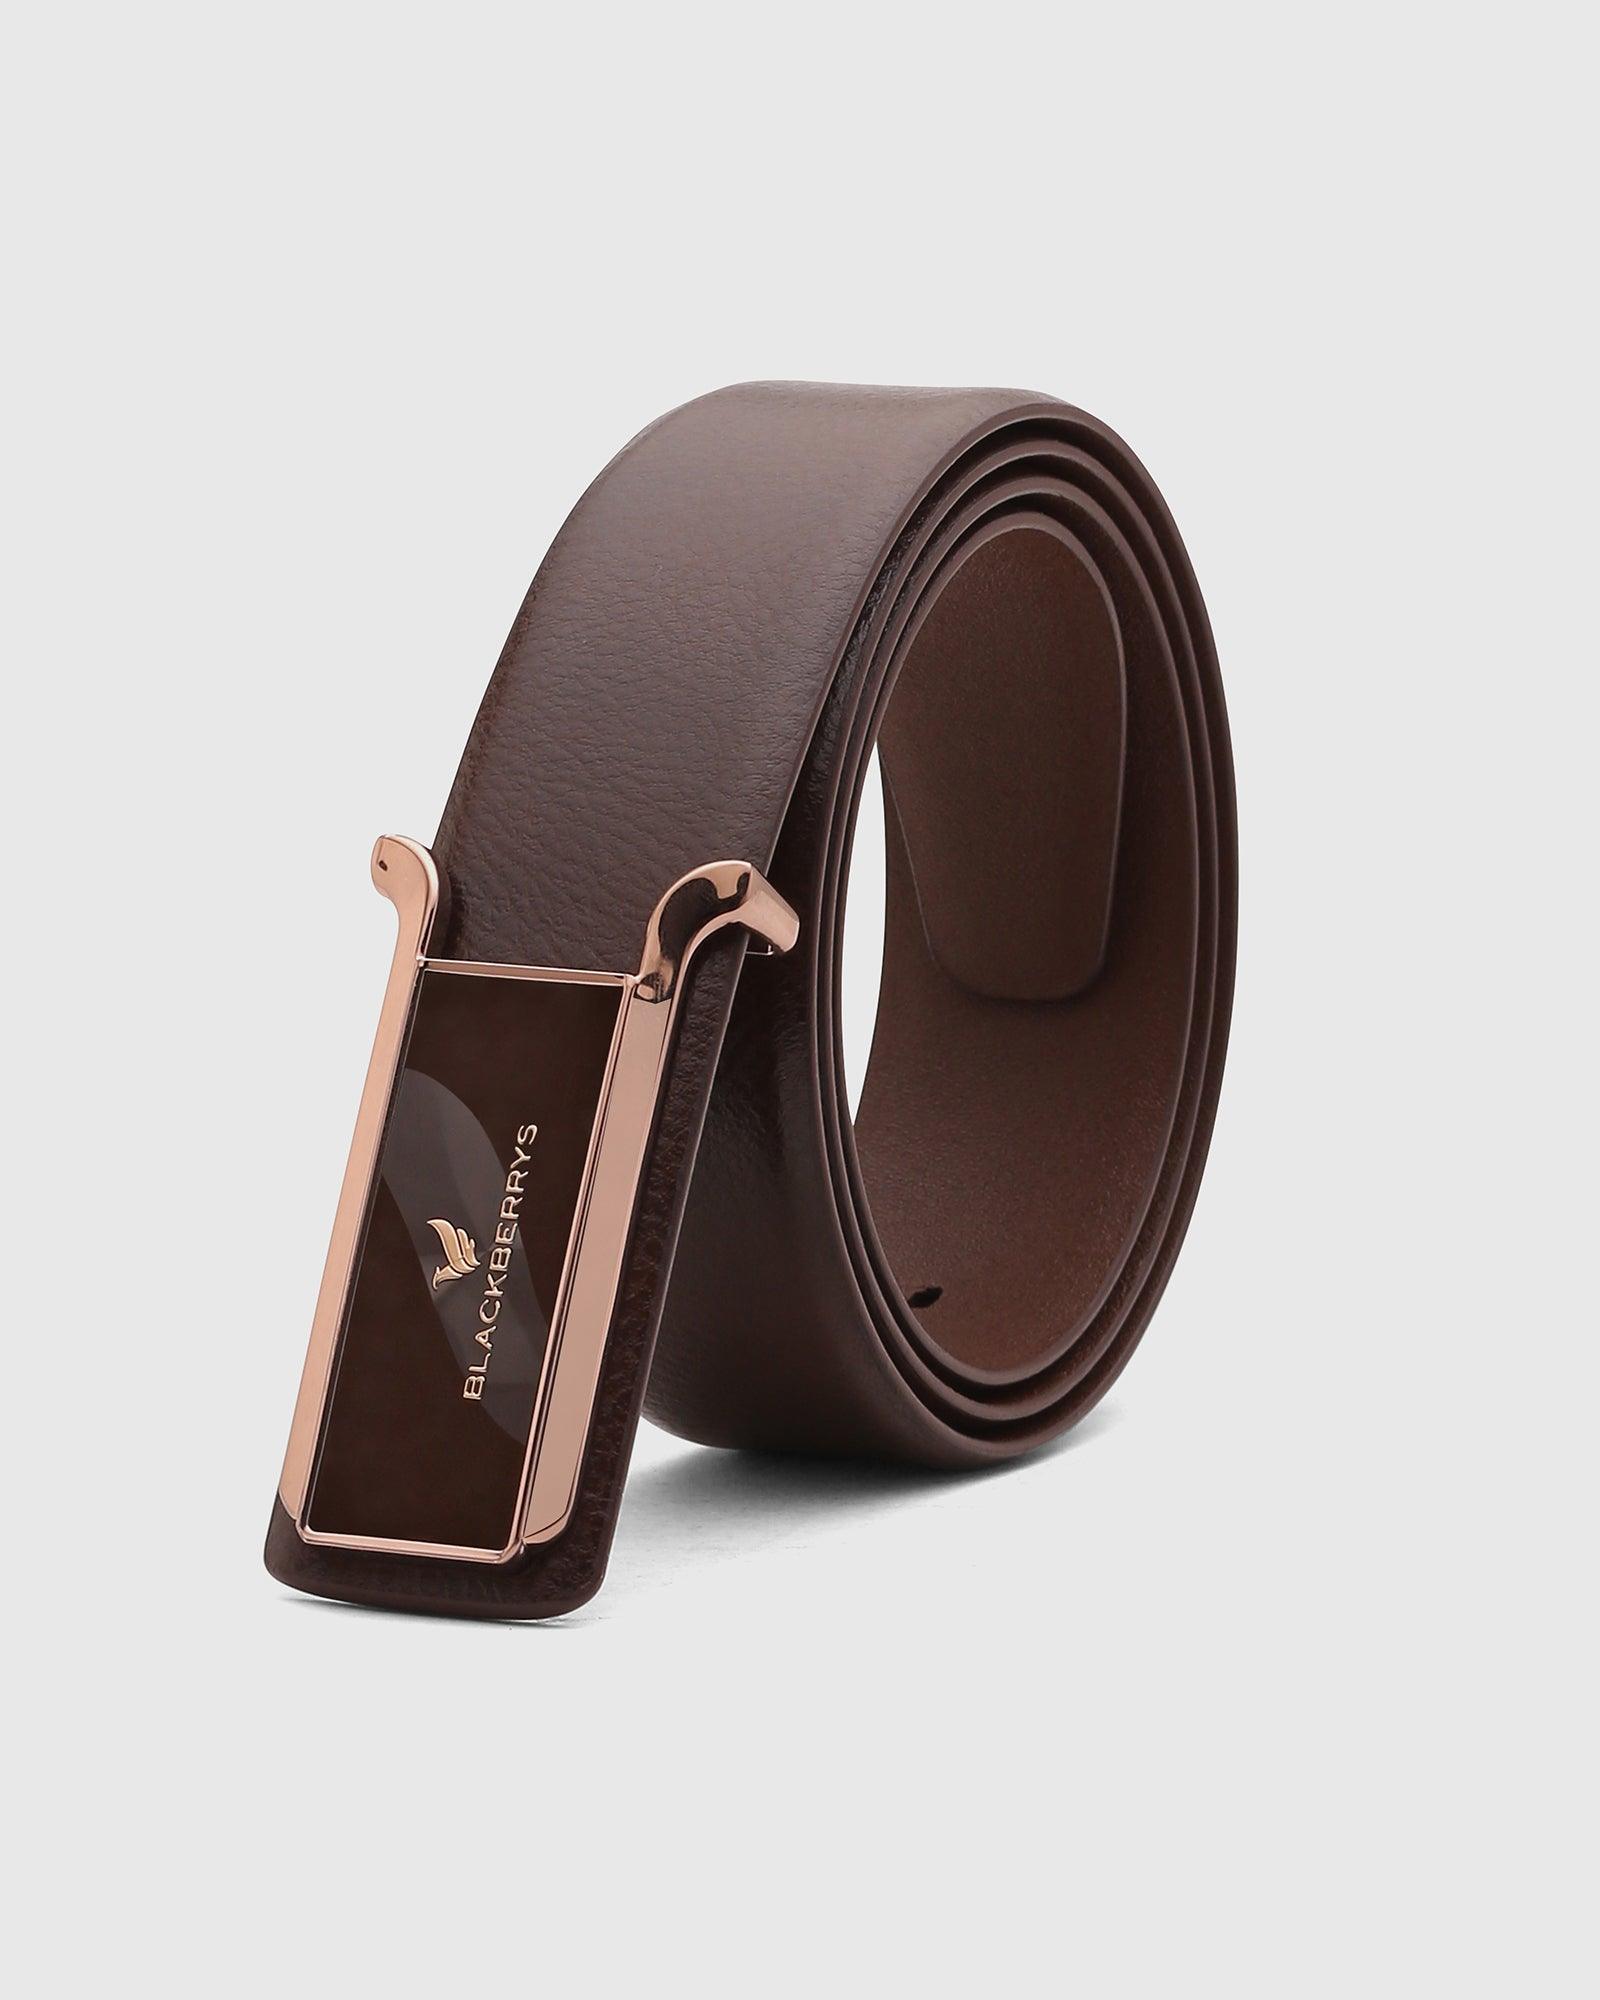 Leather Brown Solid Belt - Steve